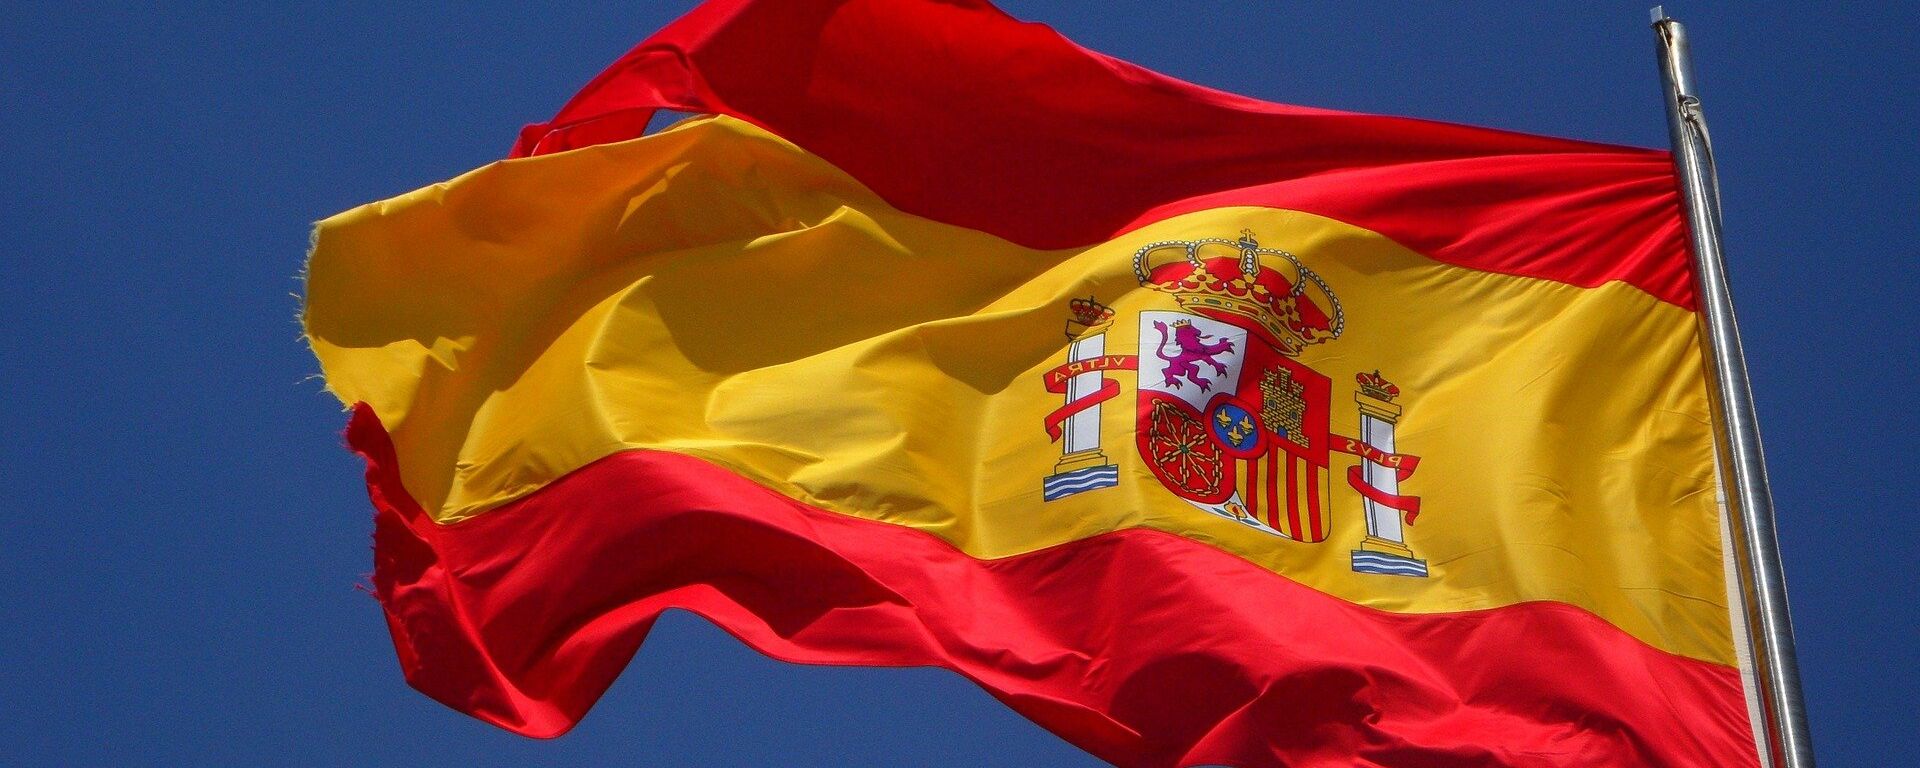 La bandera de España - Sputnik Mundo, 1920, 18.10.2018